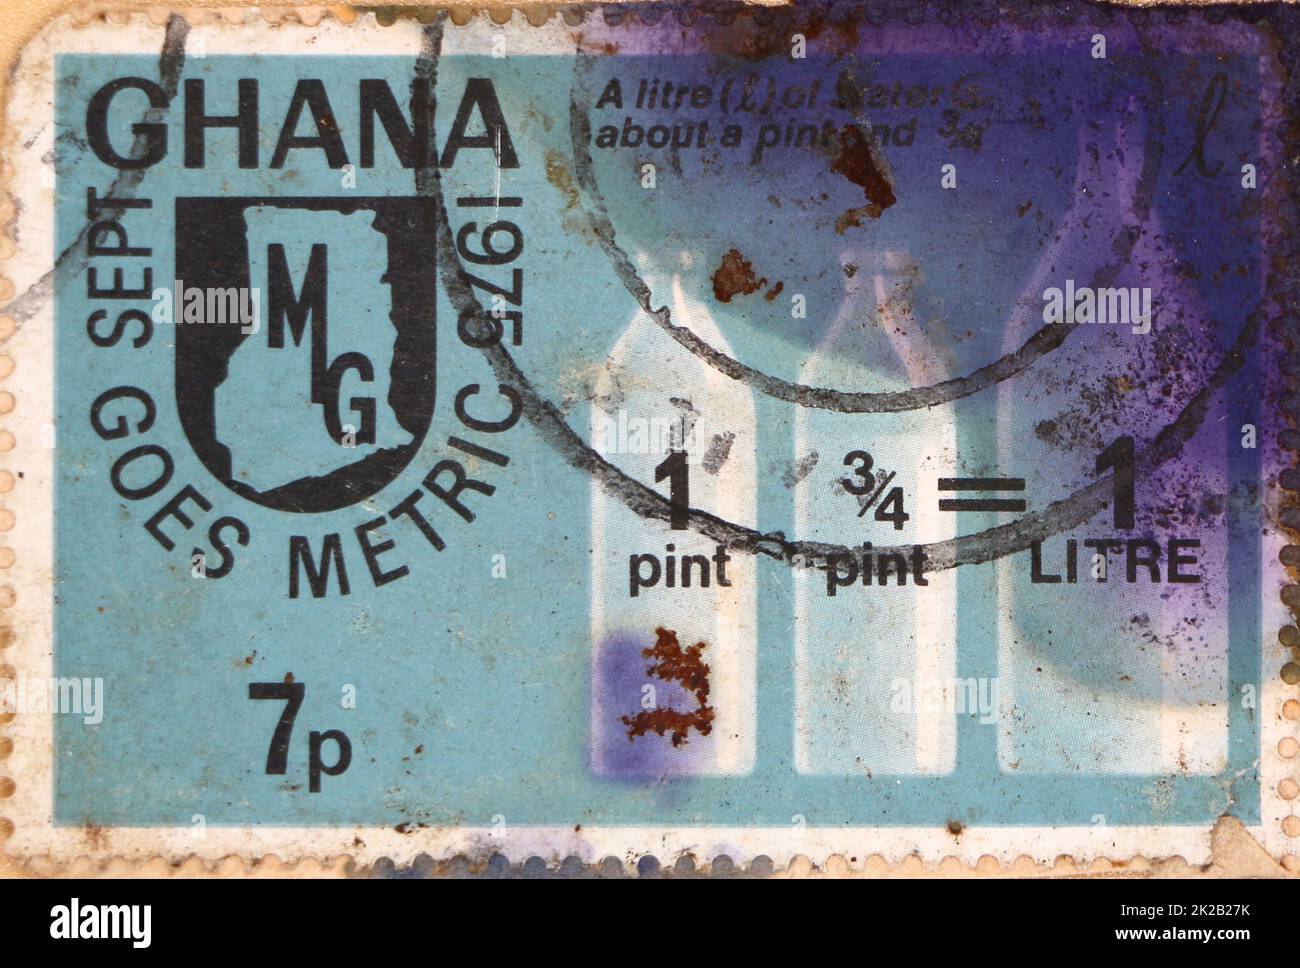 Foto einer mit Tinte befleckten Briefmarke aus Ghana mit einer Erklärung für Ghana, die metrisch 1 3/4 Pints = 1 Liter 1975 läuft Stockfoto